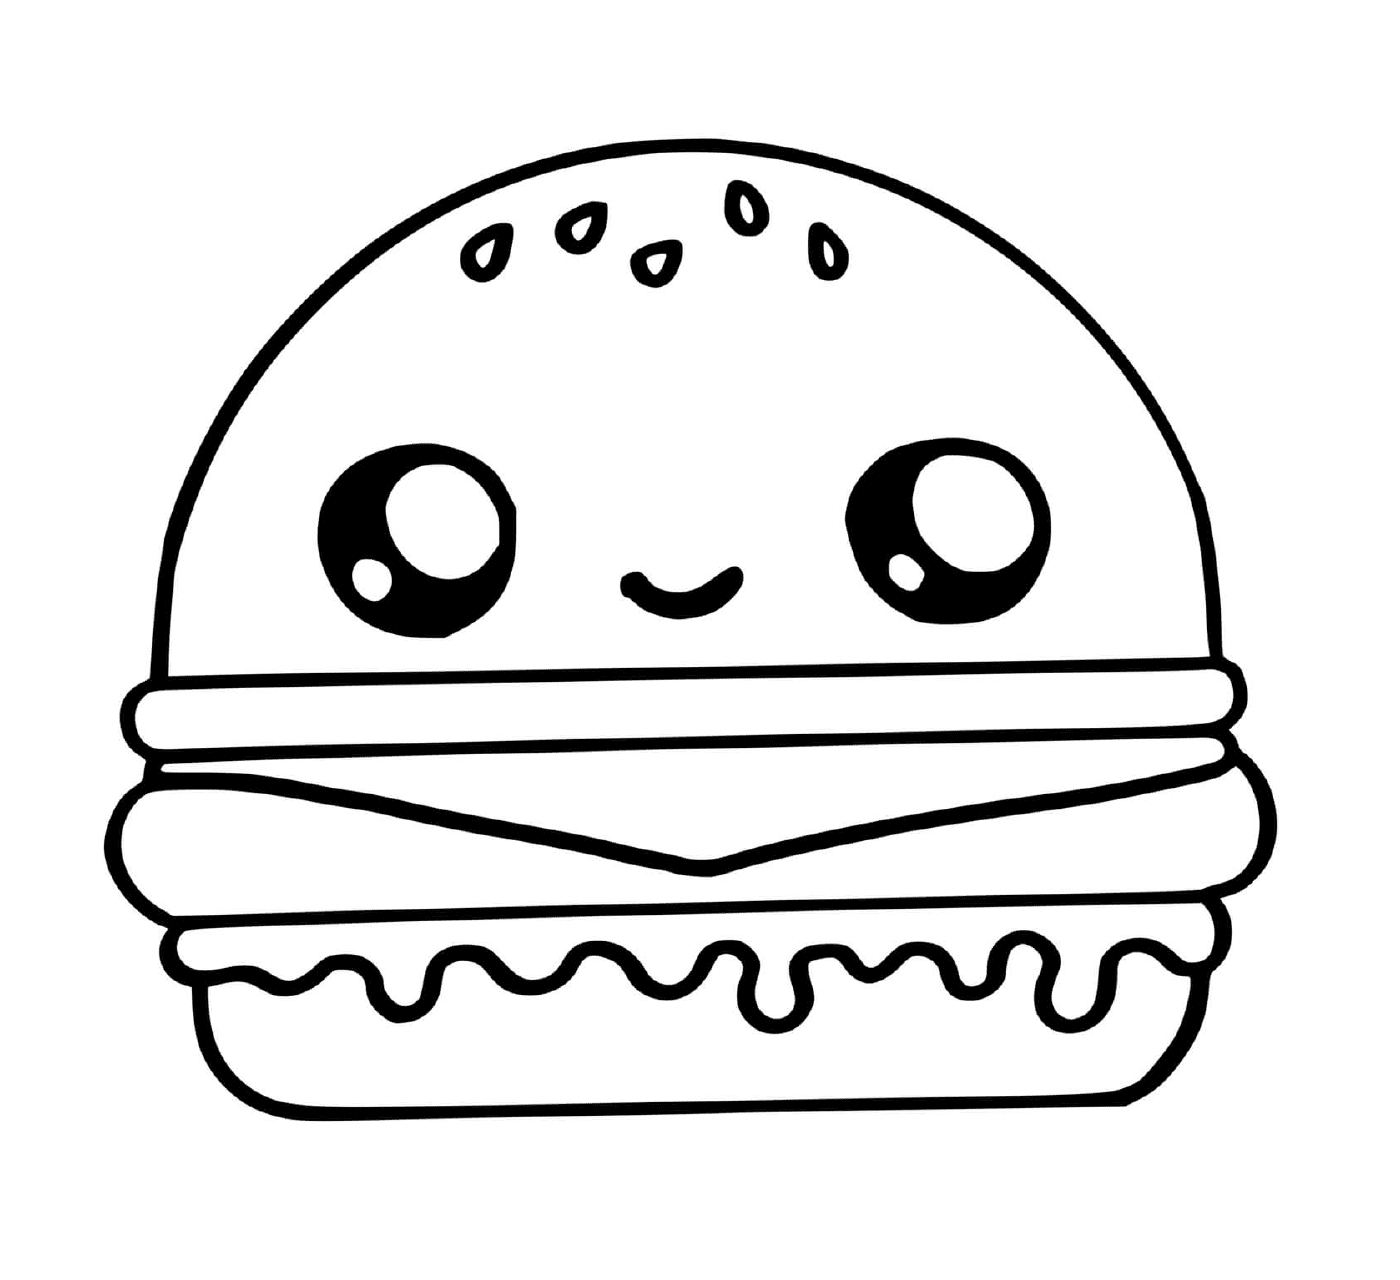  A cute hamburger 